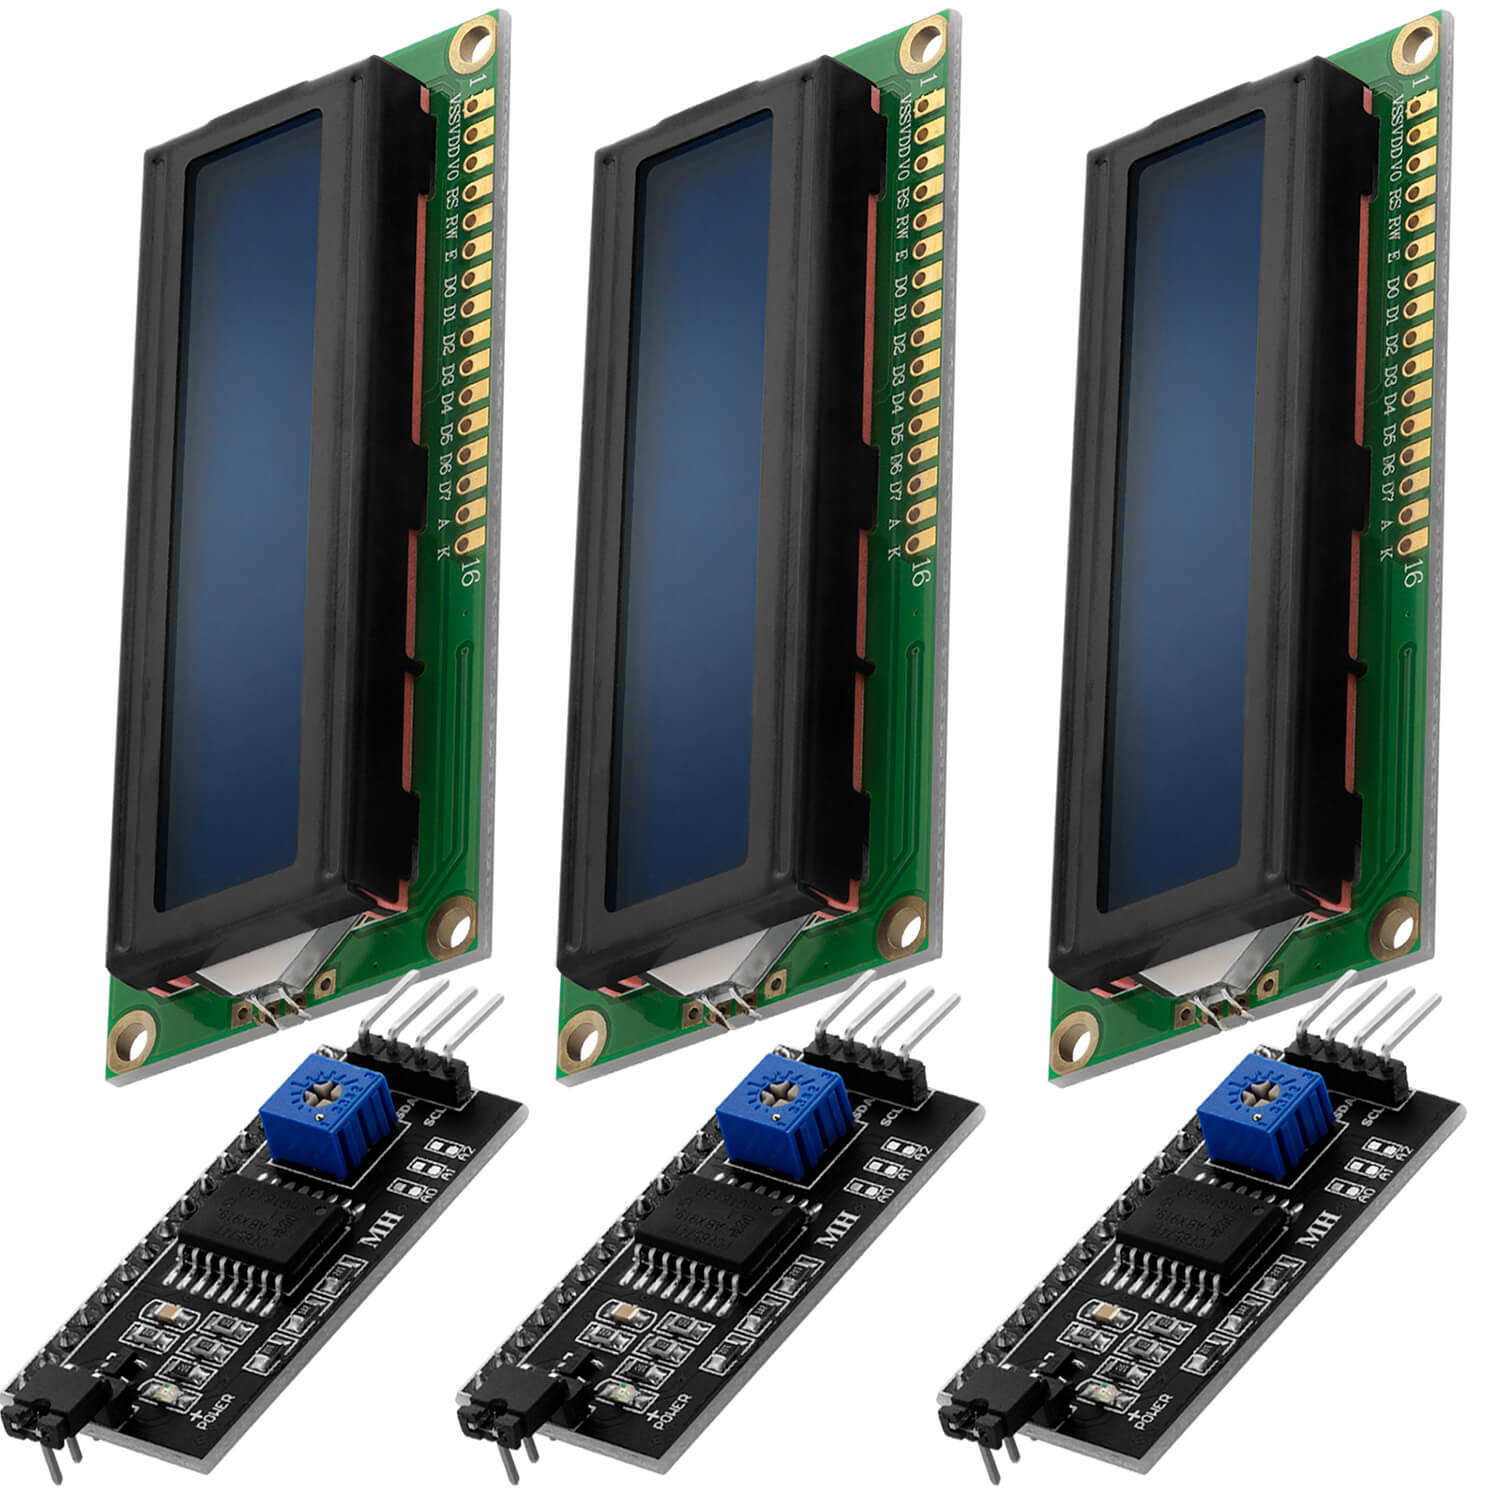 HD44780 1602 LCD Modul Display Bundle mit I2C Schnittstelle 2x16 Zeichen kompatibel mit Arduino und Raspberry Pi - AZ-Delivery